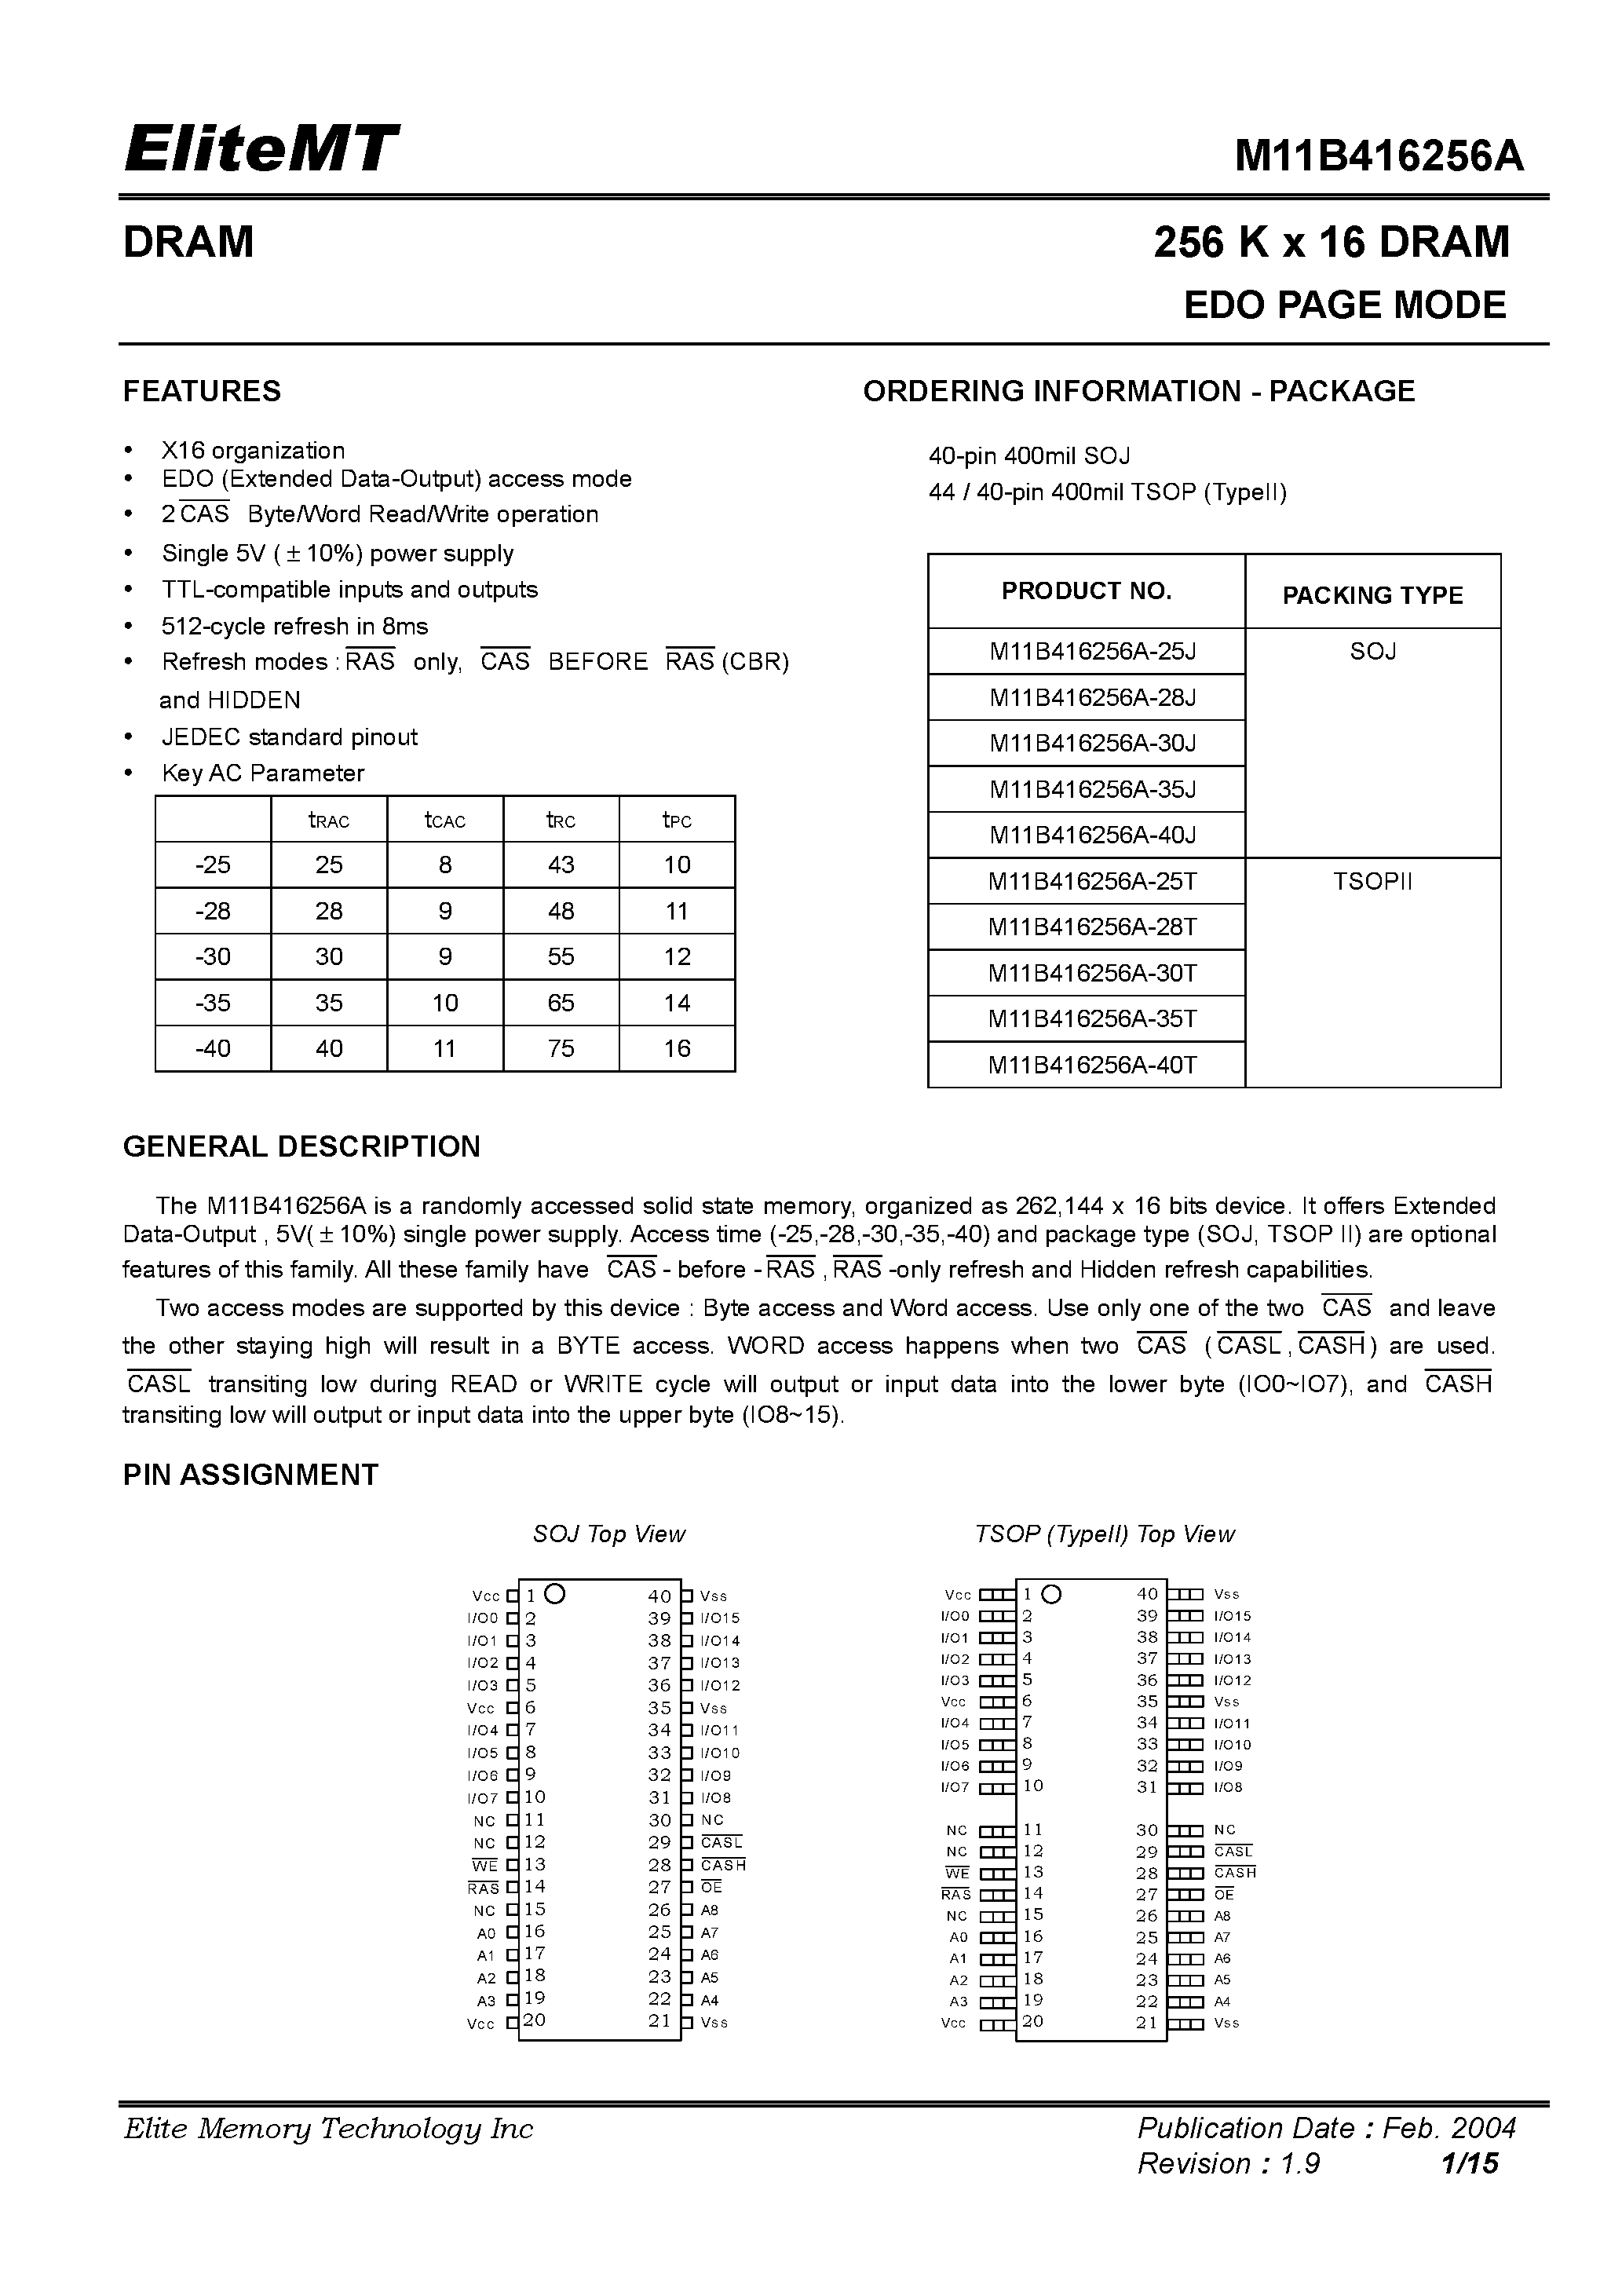 Datasheet M11B416256A-40T - 256 K x 16 DRAM EDO PAGE MODE page 1